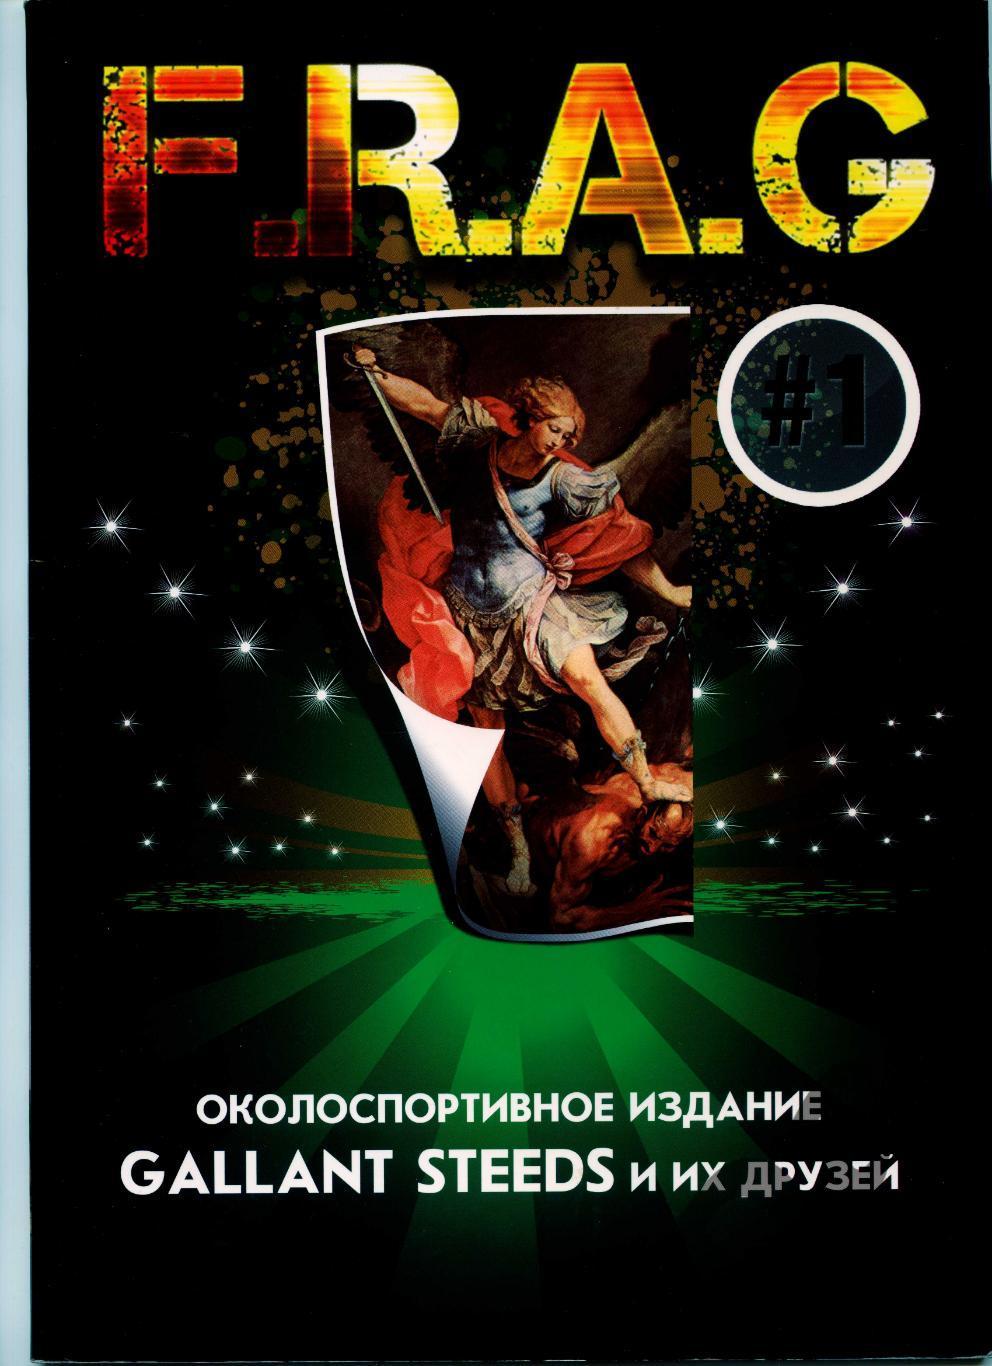 Фанзин F. R. A. G. S #1 (ЦСКА Москва)от Gallant Steeds